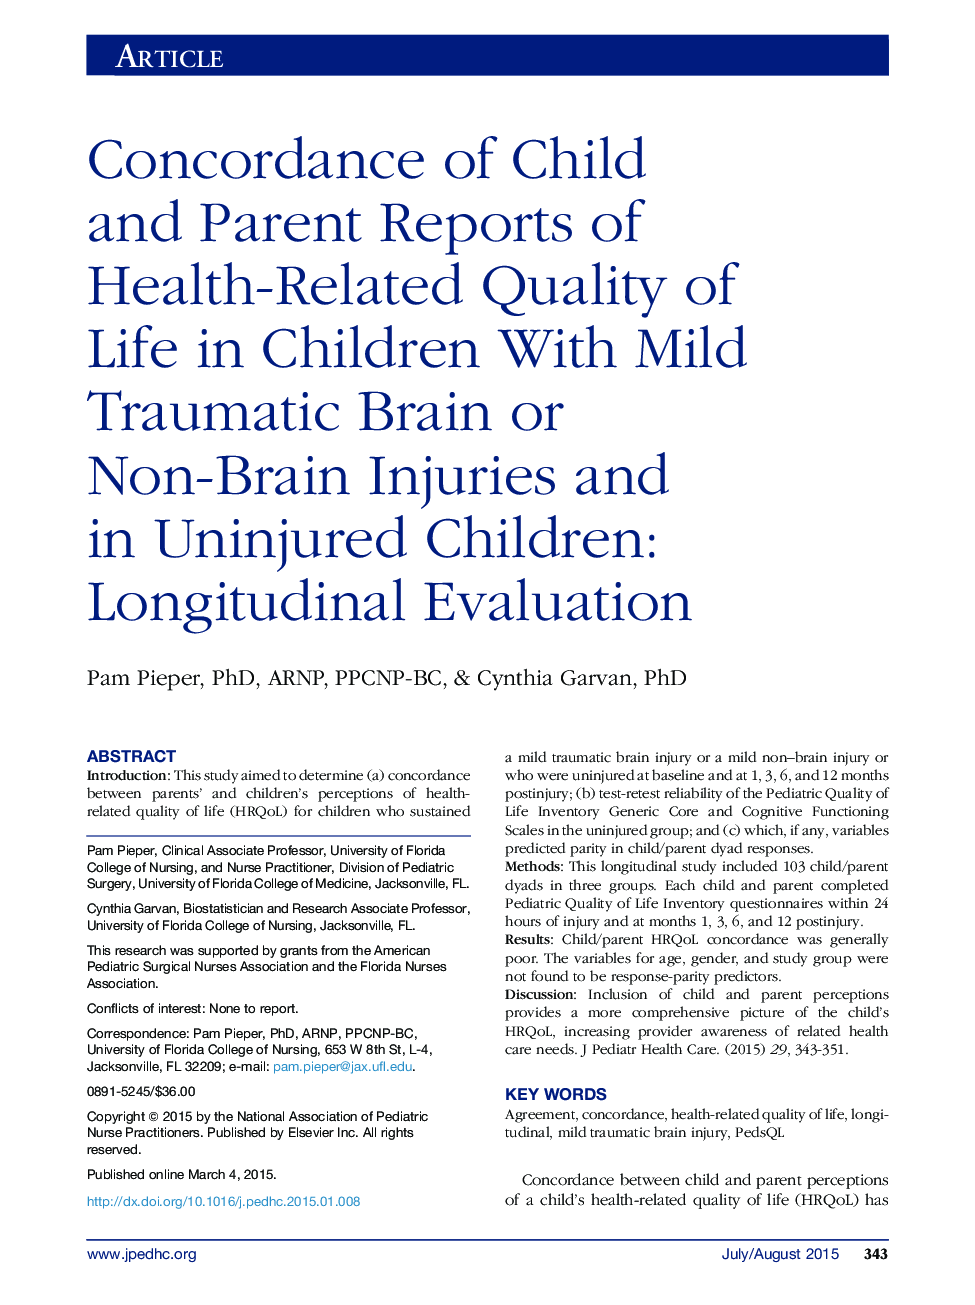 مطابقت گزارش های کودک و والدین با کیفیت زندگی مرتبط با سلامت در کودکان مبتلا به ضایعات مغزی و غیرمغزی خفیف و در کودکان غیرآسیب دیده: ارزیابی طولی